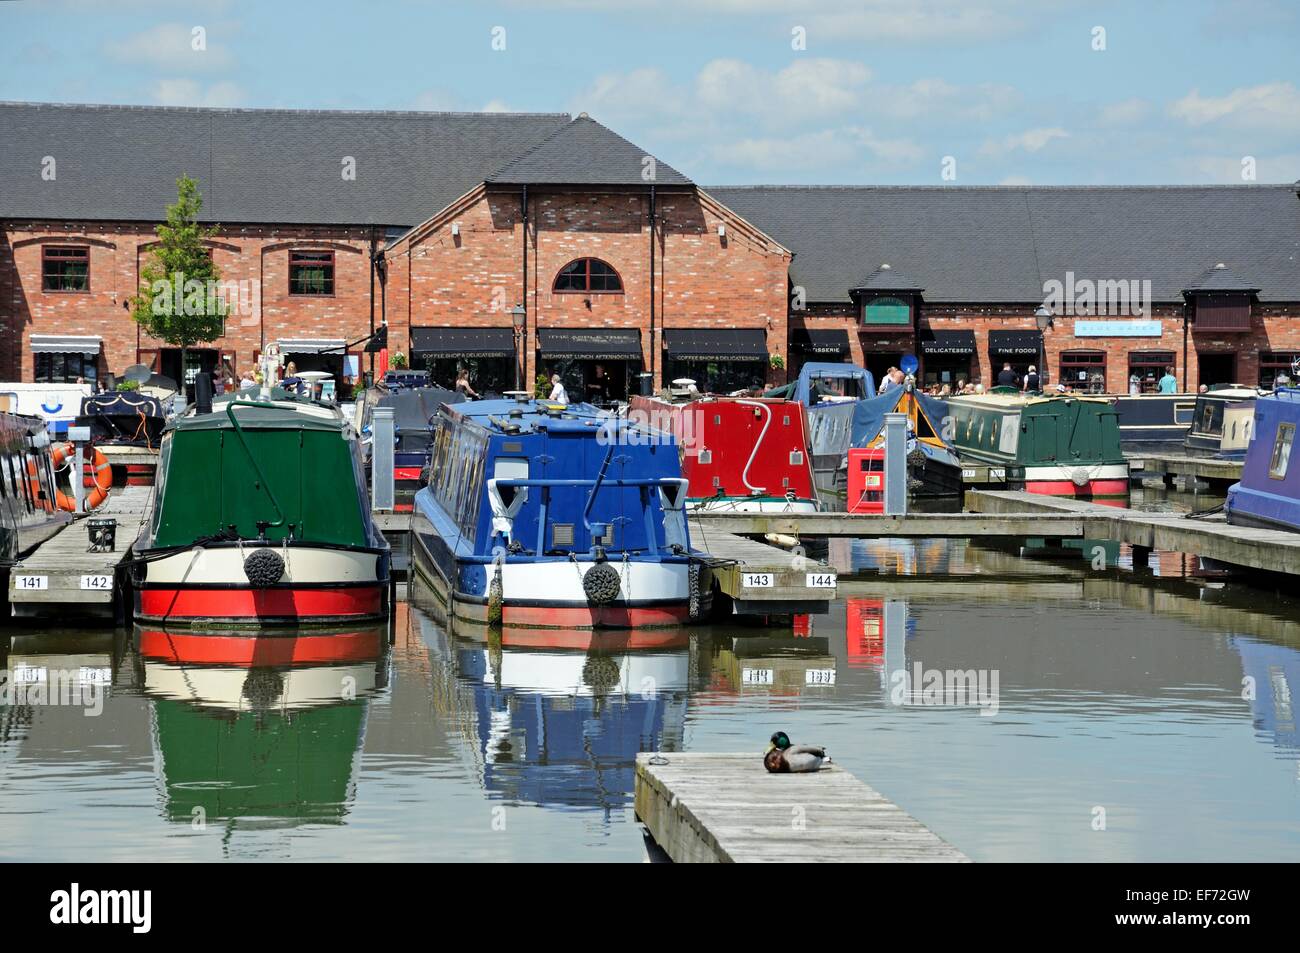 Narrowboats sur leurs amarres dans le bassin du canal, avec des magasins, bars et restaurants à l'arrière, Barton Marina, en Angleterre. Banque D'Images